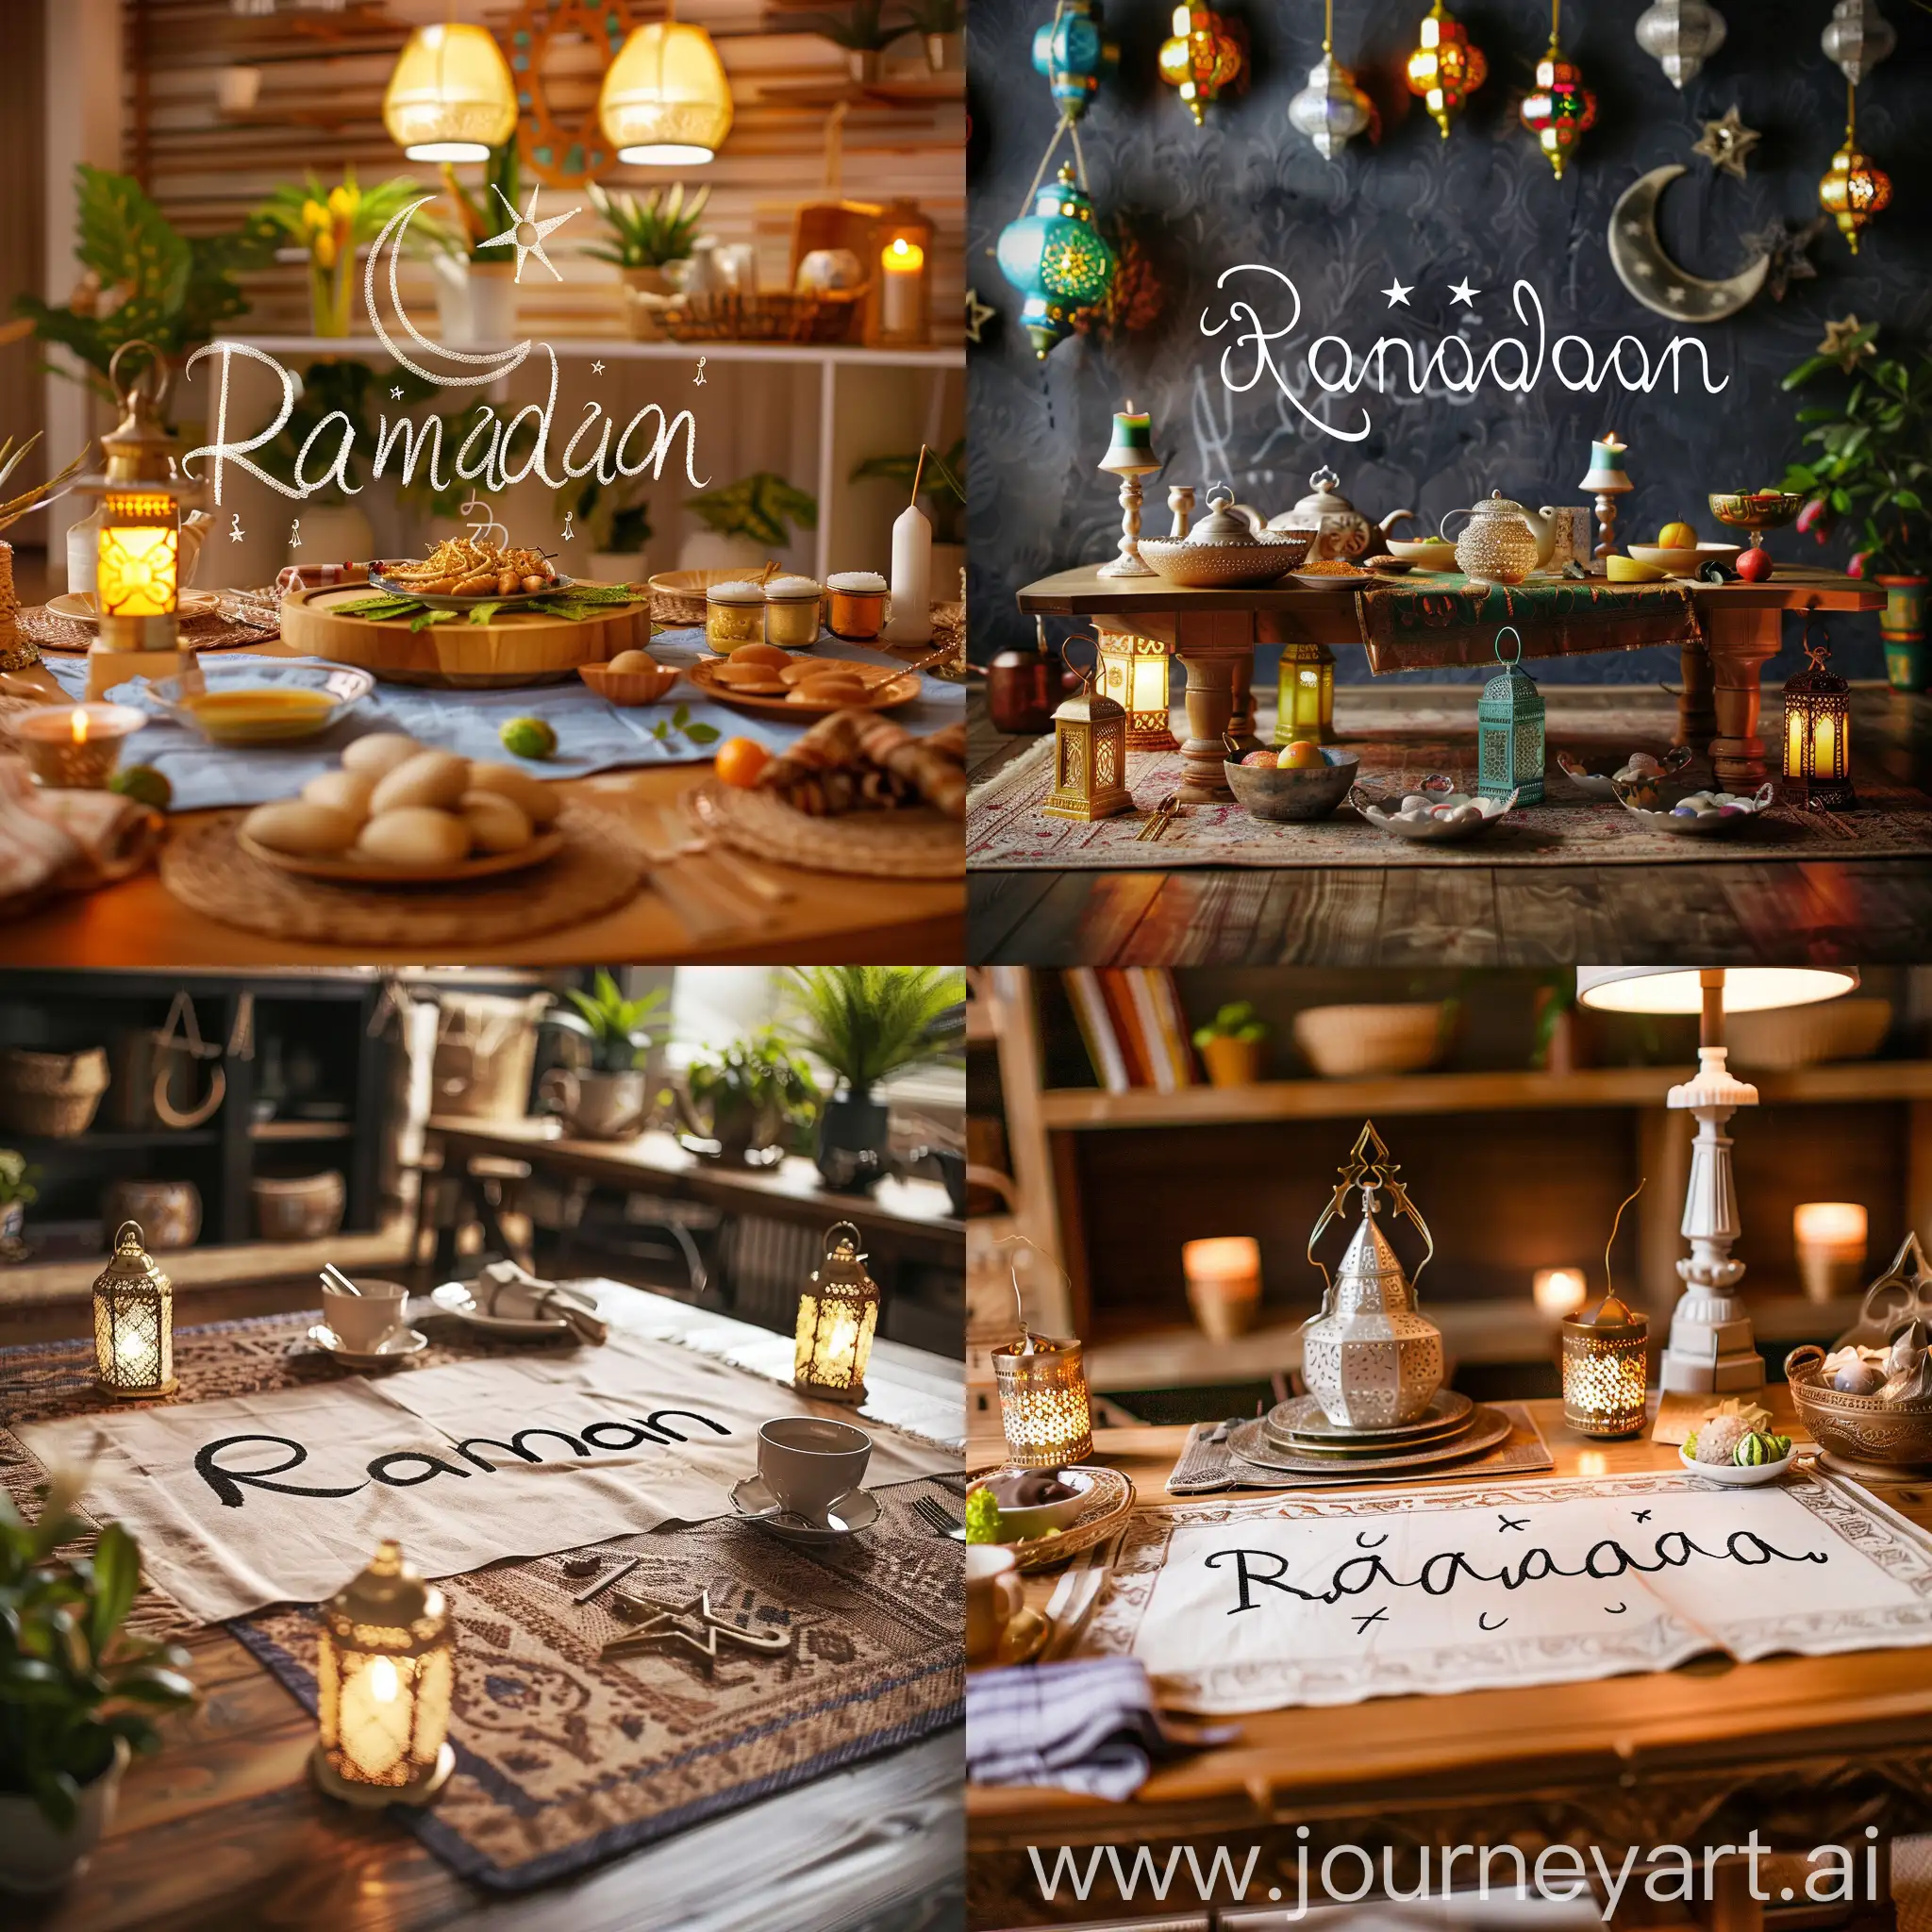  سفرة طعام رمضانية مرسوم عليها كلمة رمضان بأجواء رمضانية وهلال وفوانيس رمضان تكون لحملة اعلانية